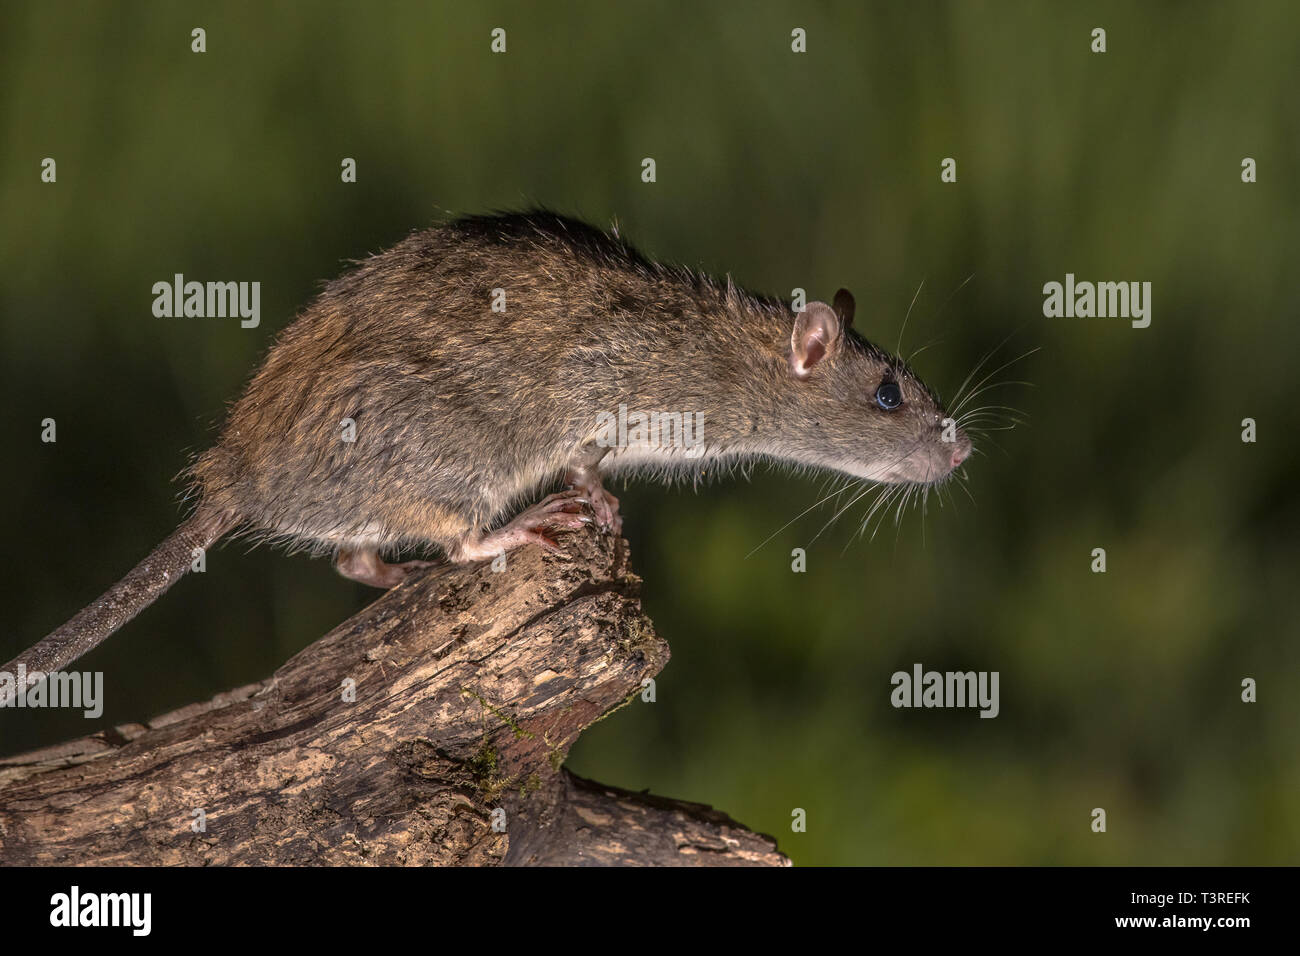 Wild marrone (ratto Rattus norvegicus) circa di saltare fom log di notte. Fotografie ad alta velocità immagine Foto Stock